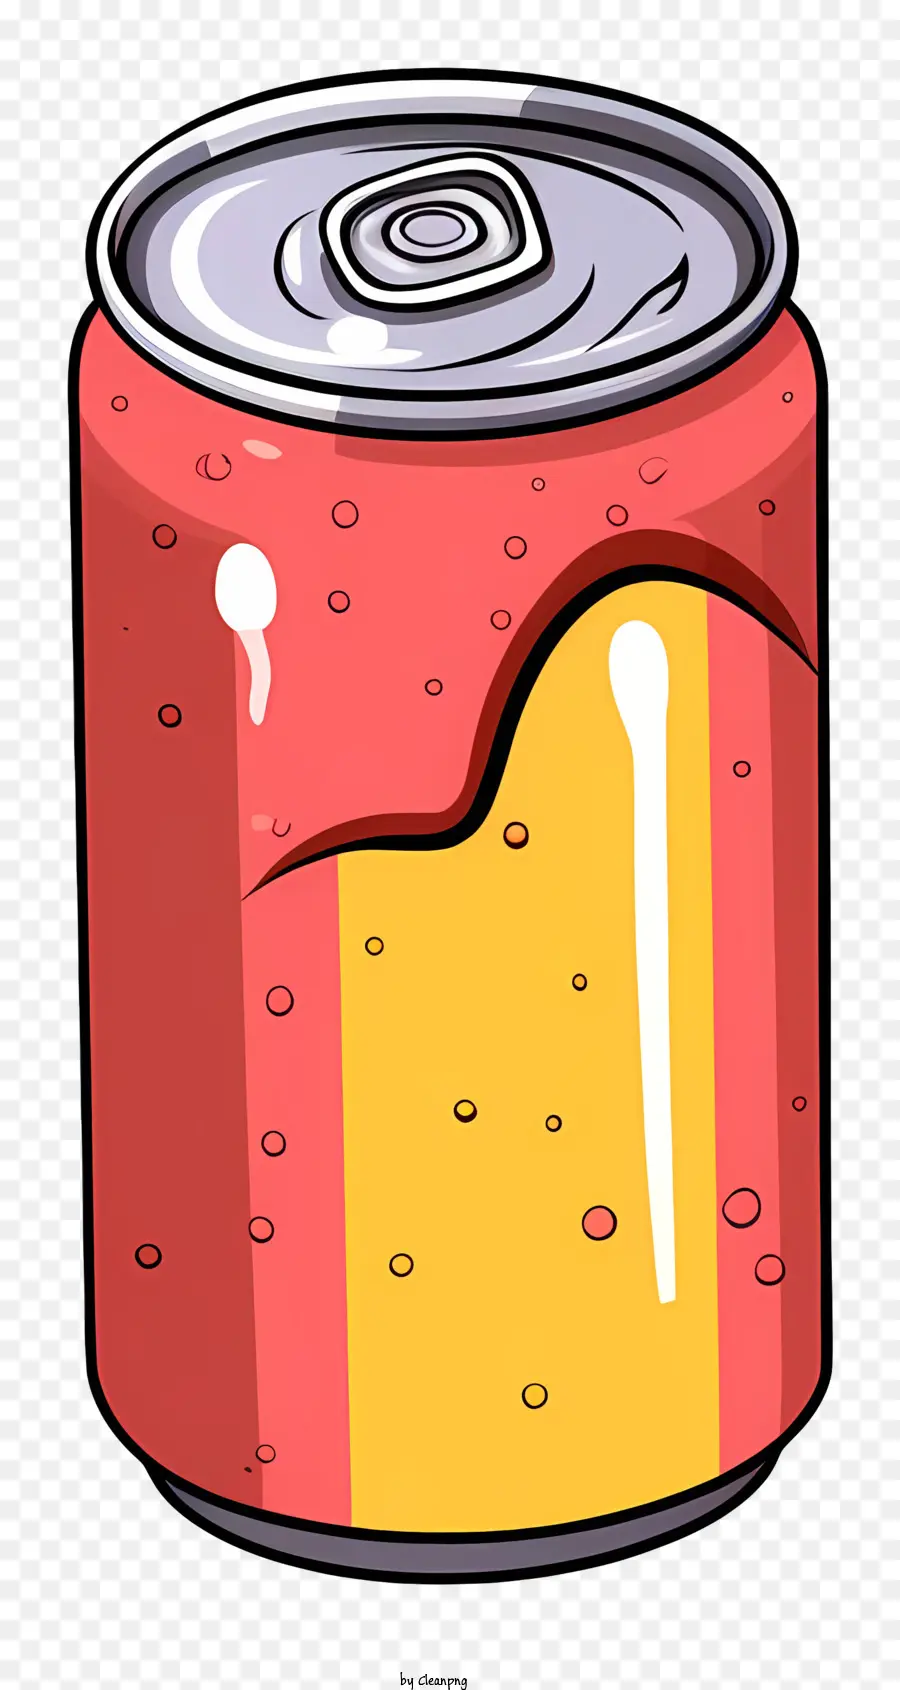 Isometrische Bierdose Carbonated Getränke kann Soda - Metallnatronendose mit roter und gelber Farbe